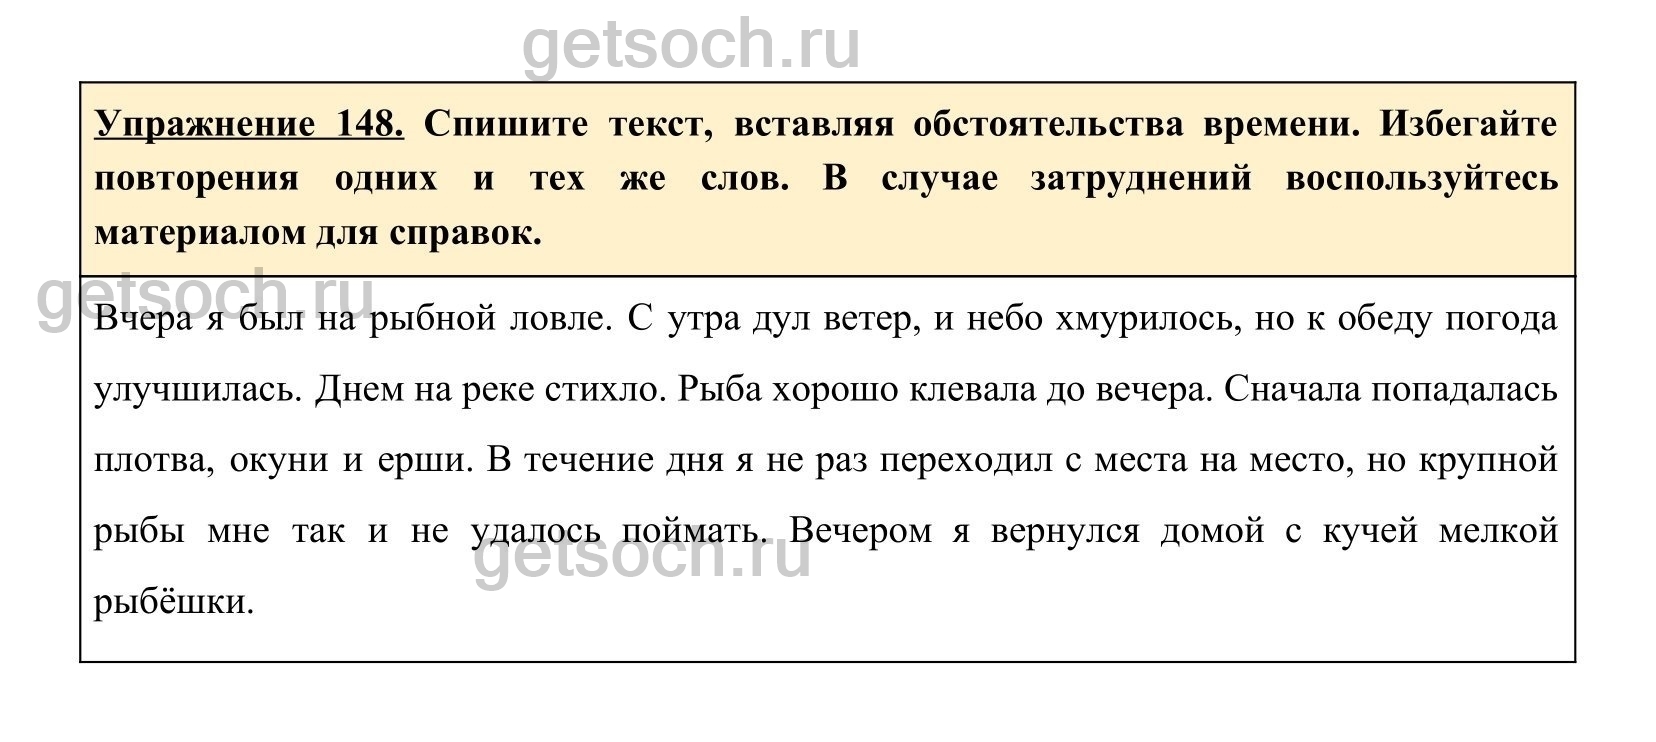 Русский язык 8 класс номер 336. Упражнение 148 по русскому языку 2 класс. Русский язык восьмой класс страница 76 упражнение 148. Какое есть прилагательное в русском языке на странице 85 упражнение 148.